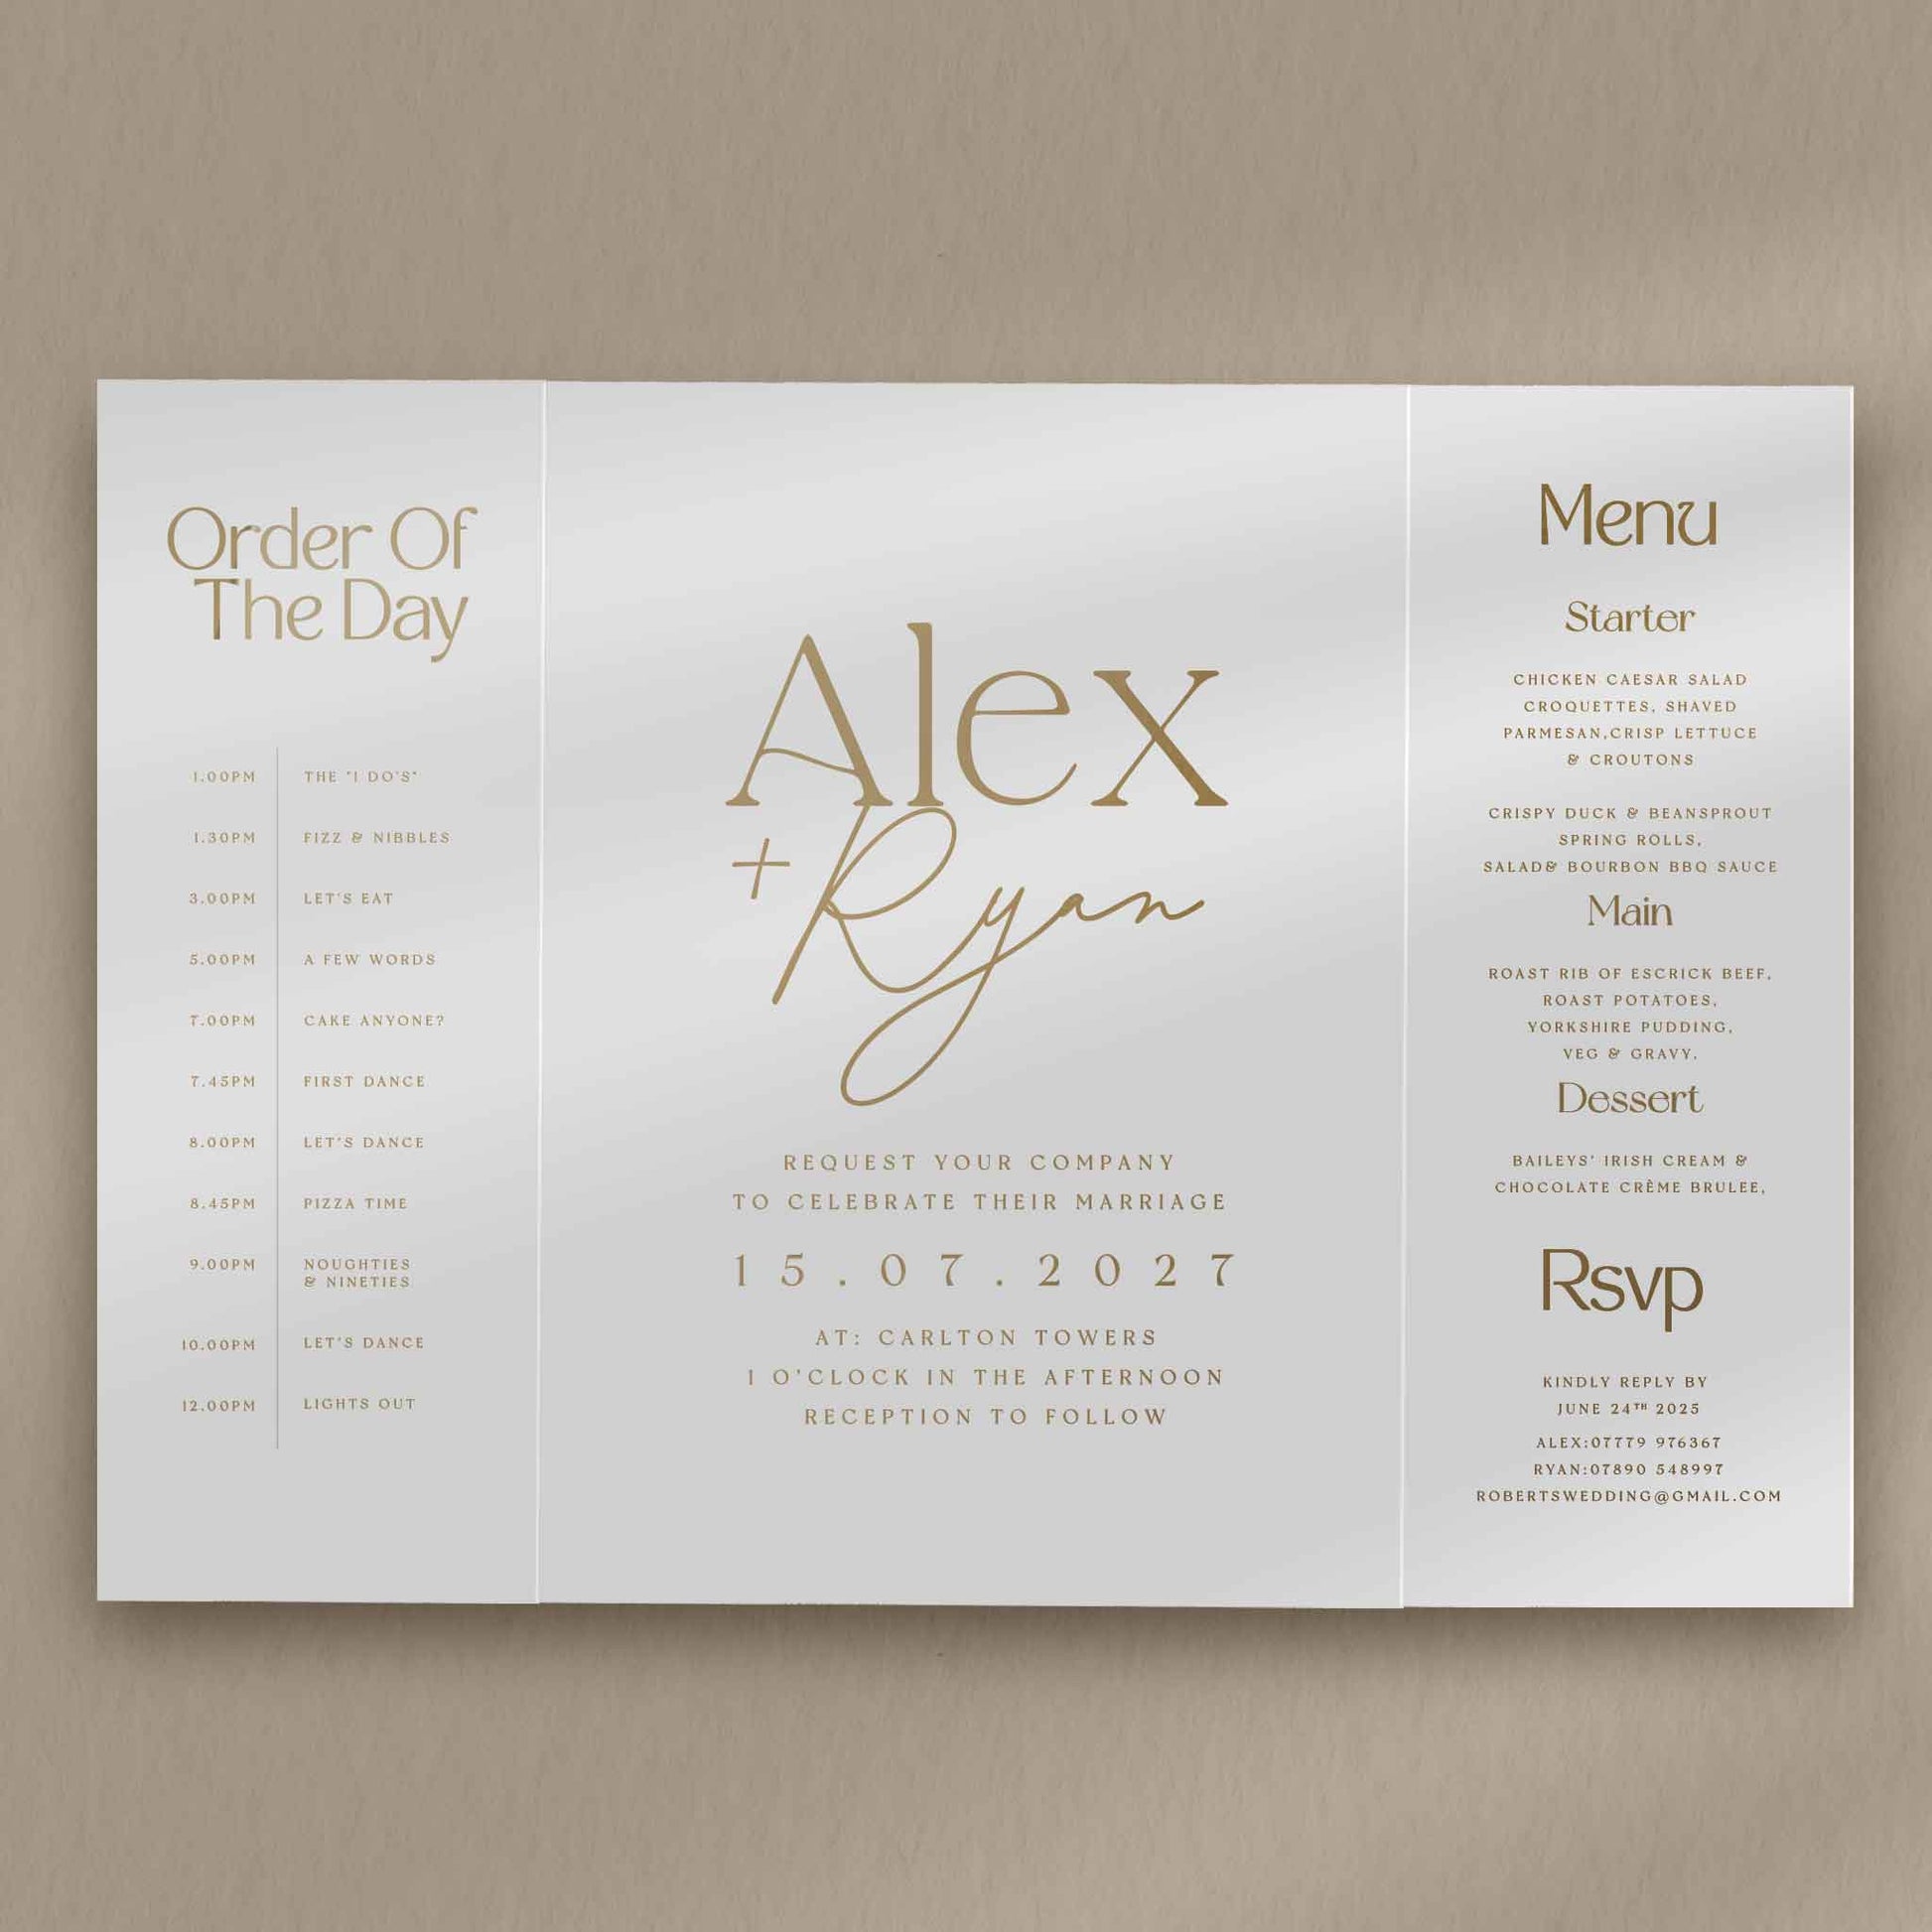 Alex Gatefold Invitation  Ivy and Gold Wedding Stationery   